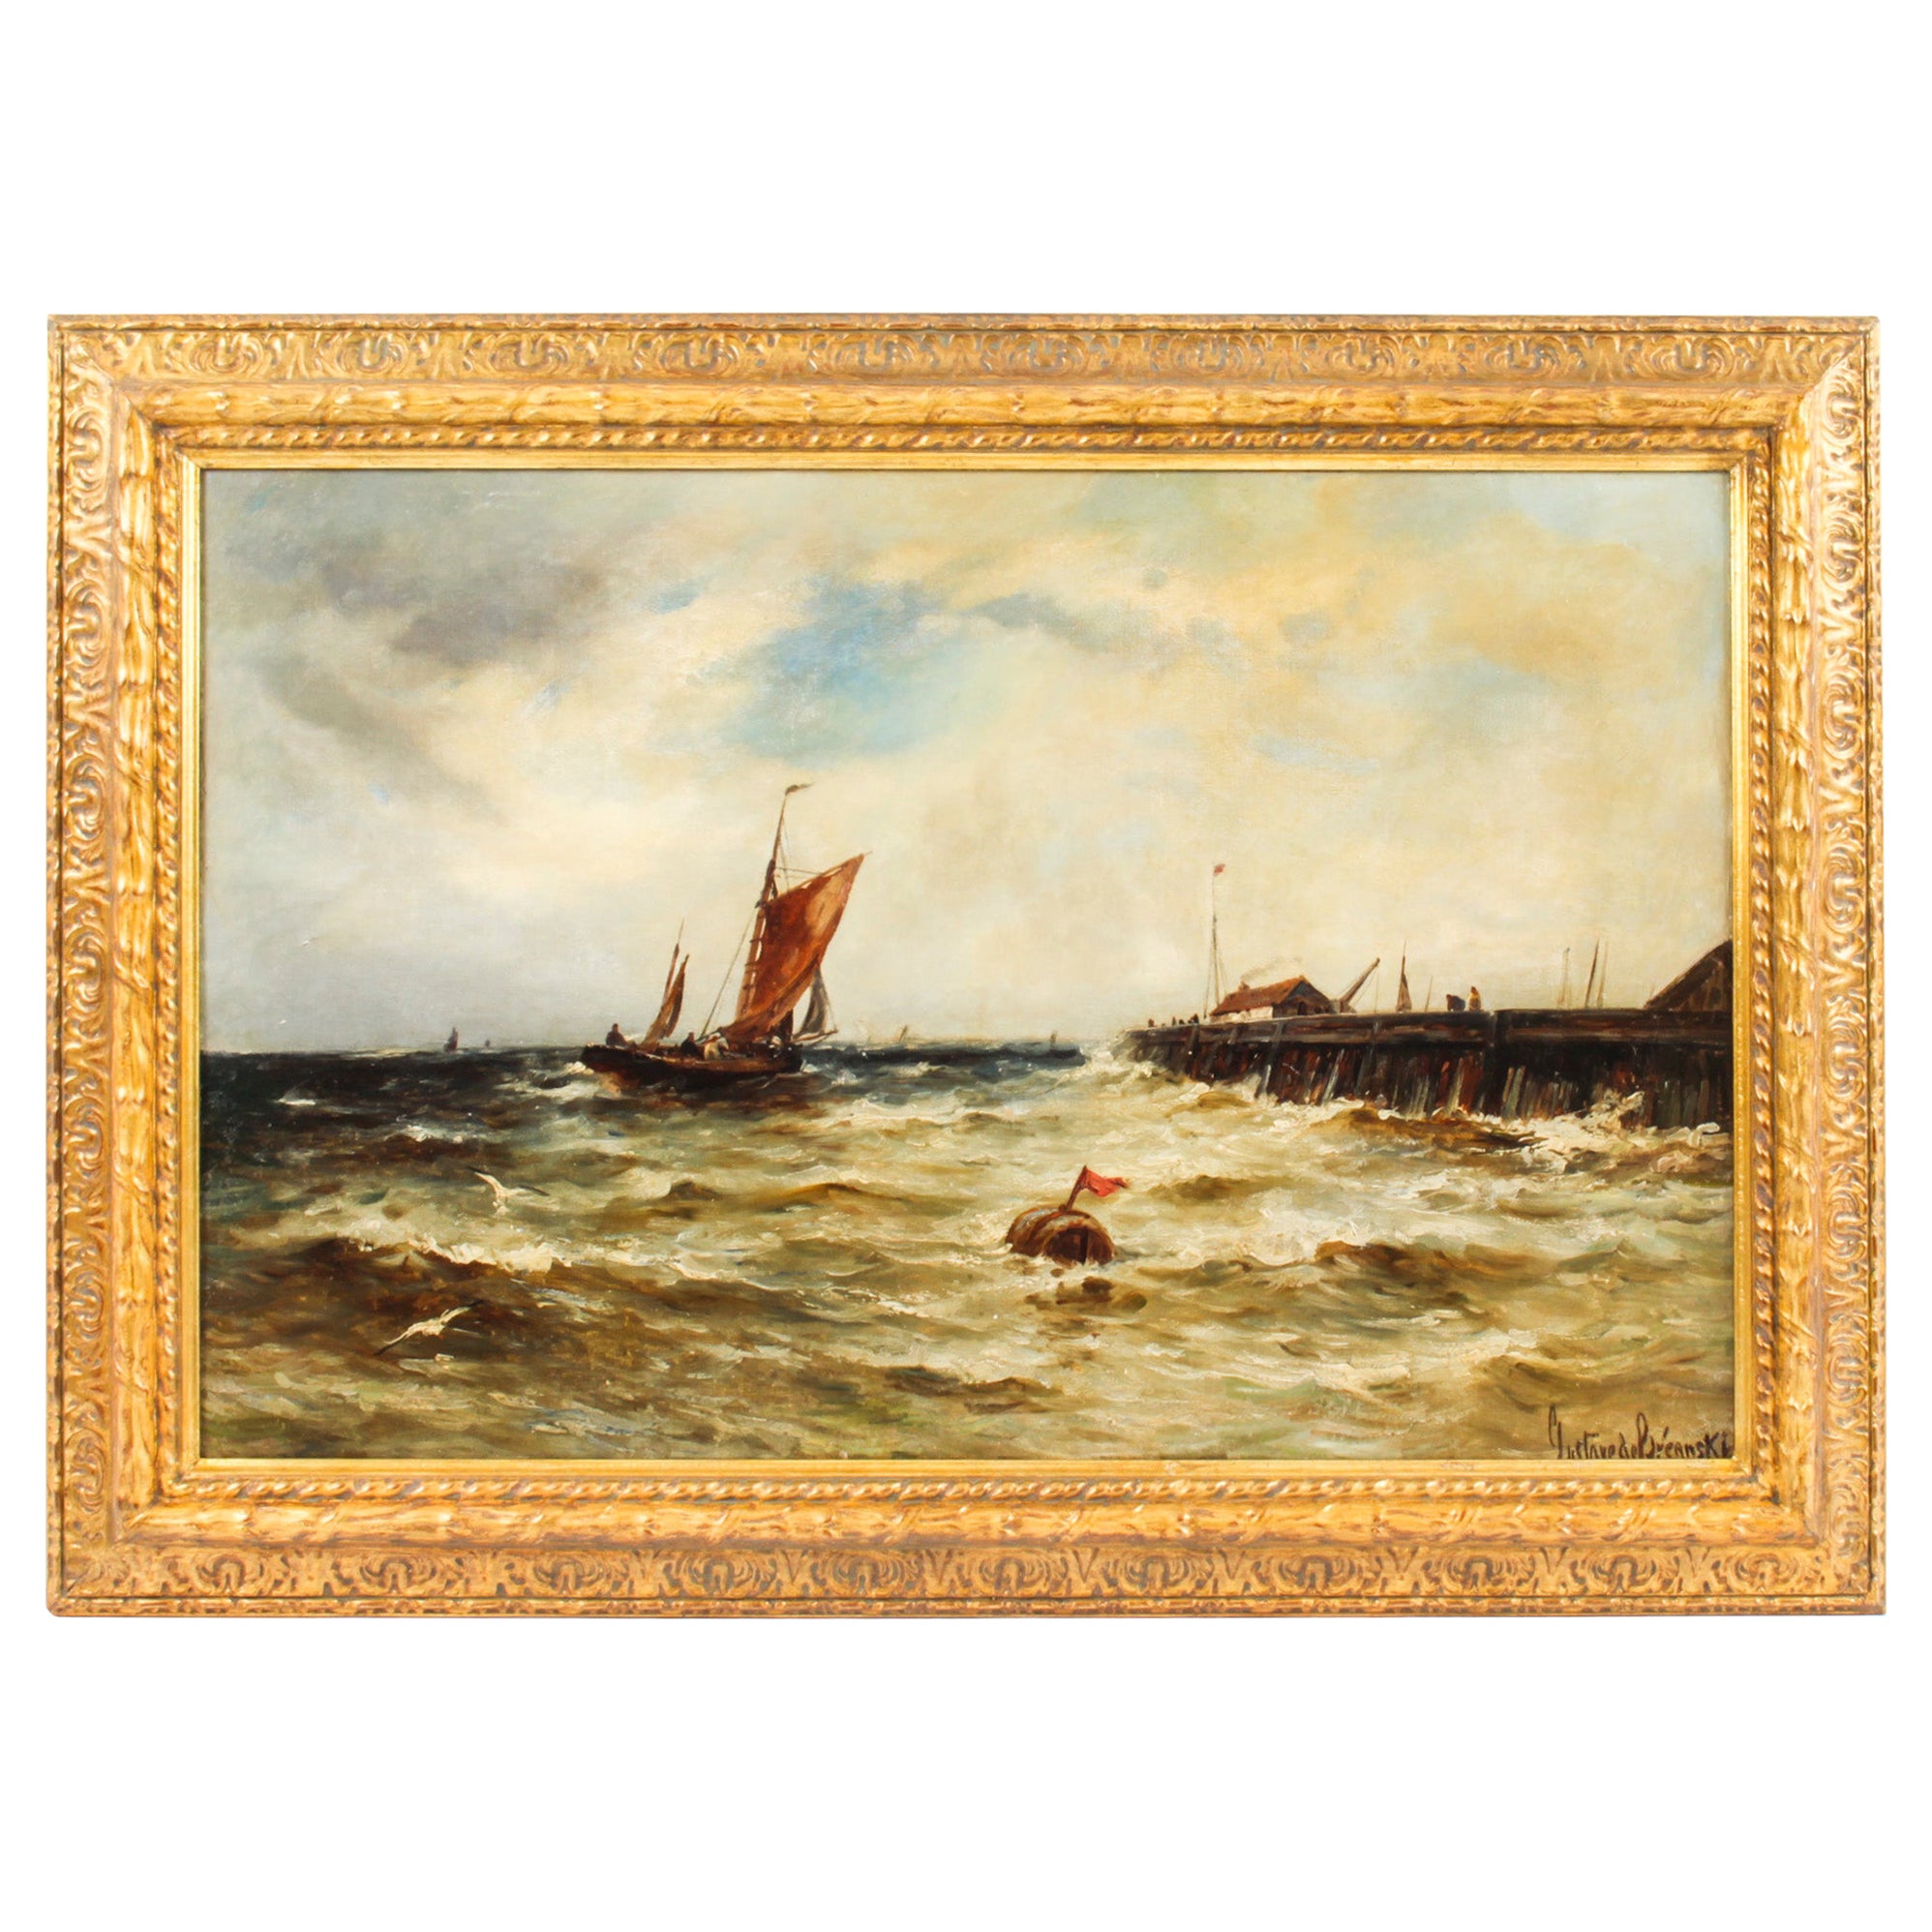 Antique Oil on Canvas Seascape Painting Gustave De Bréanski, 19th Century